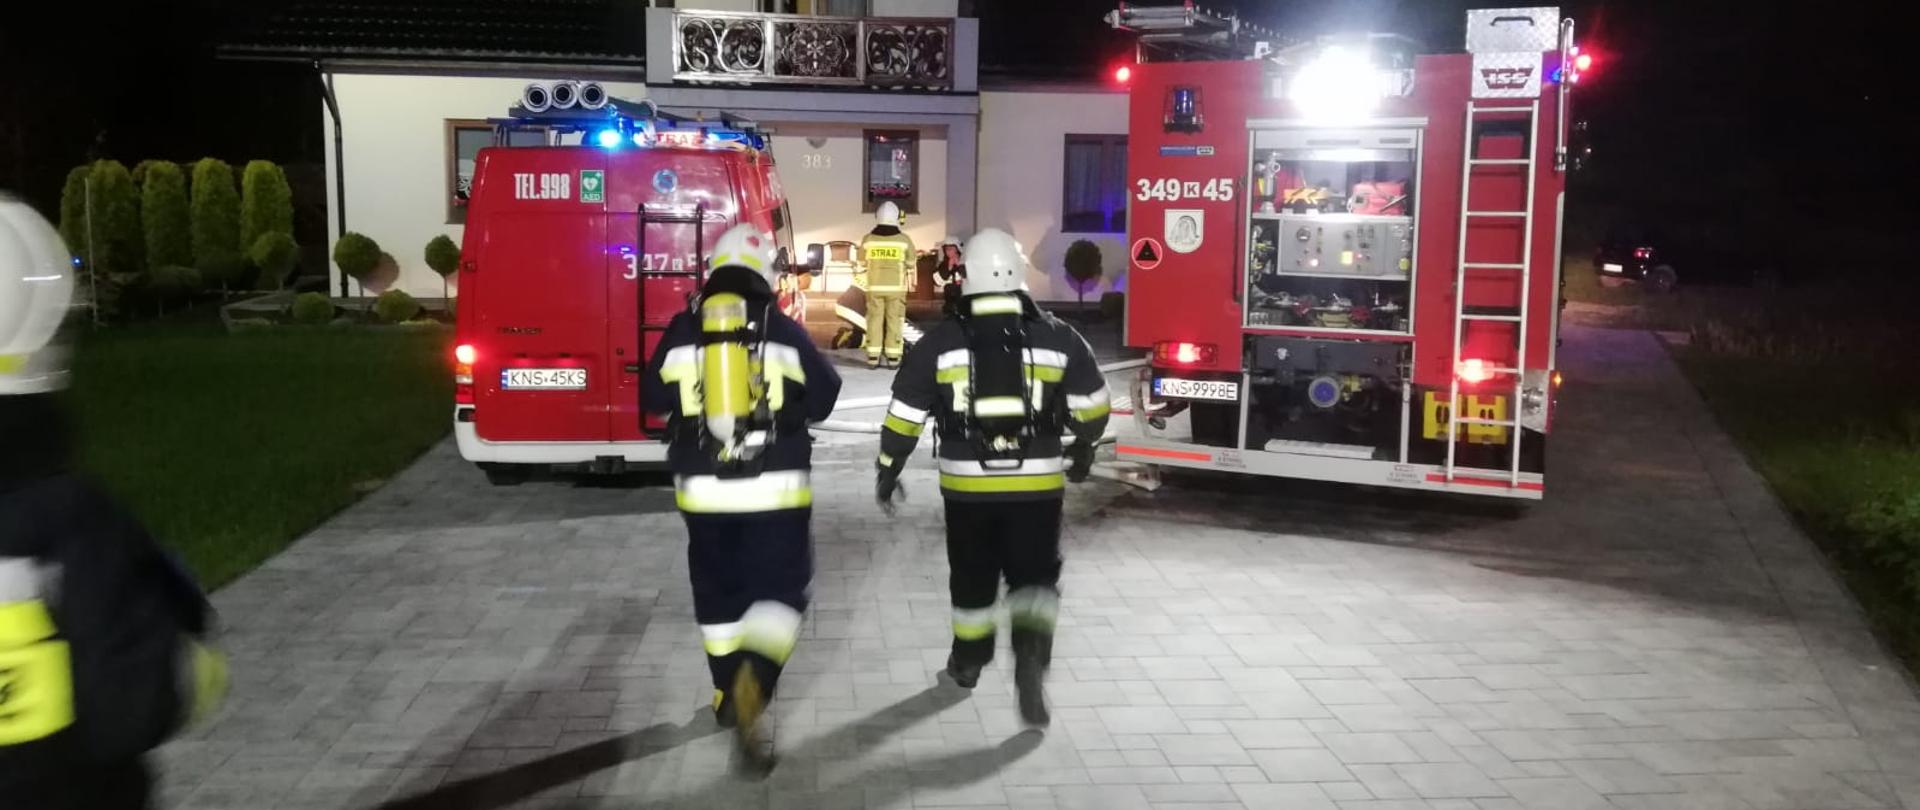 Strażacy i samochody pożarnicze. W tle budynek w którym prowadzono działania ratownicze.